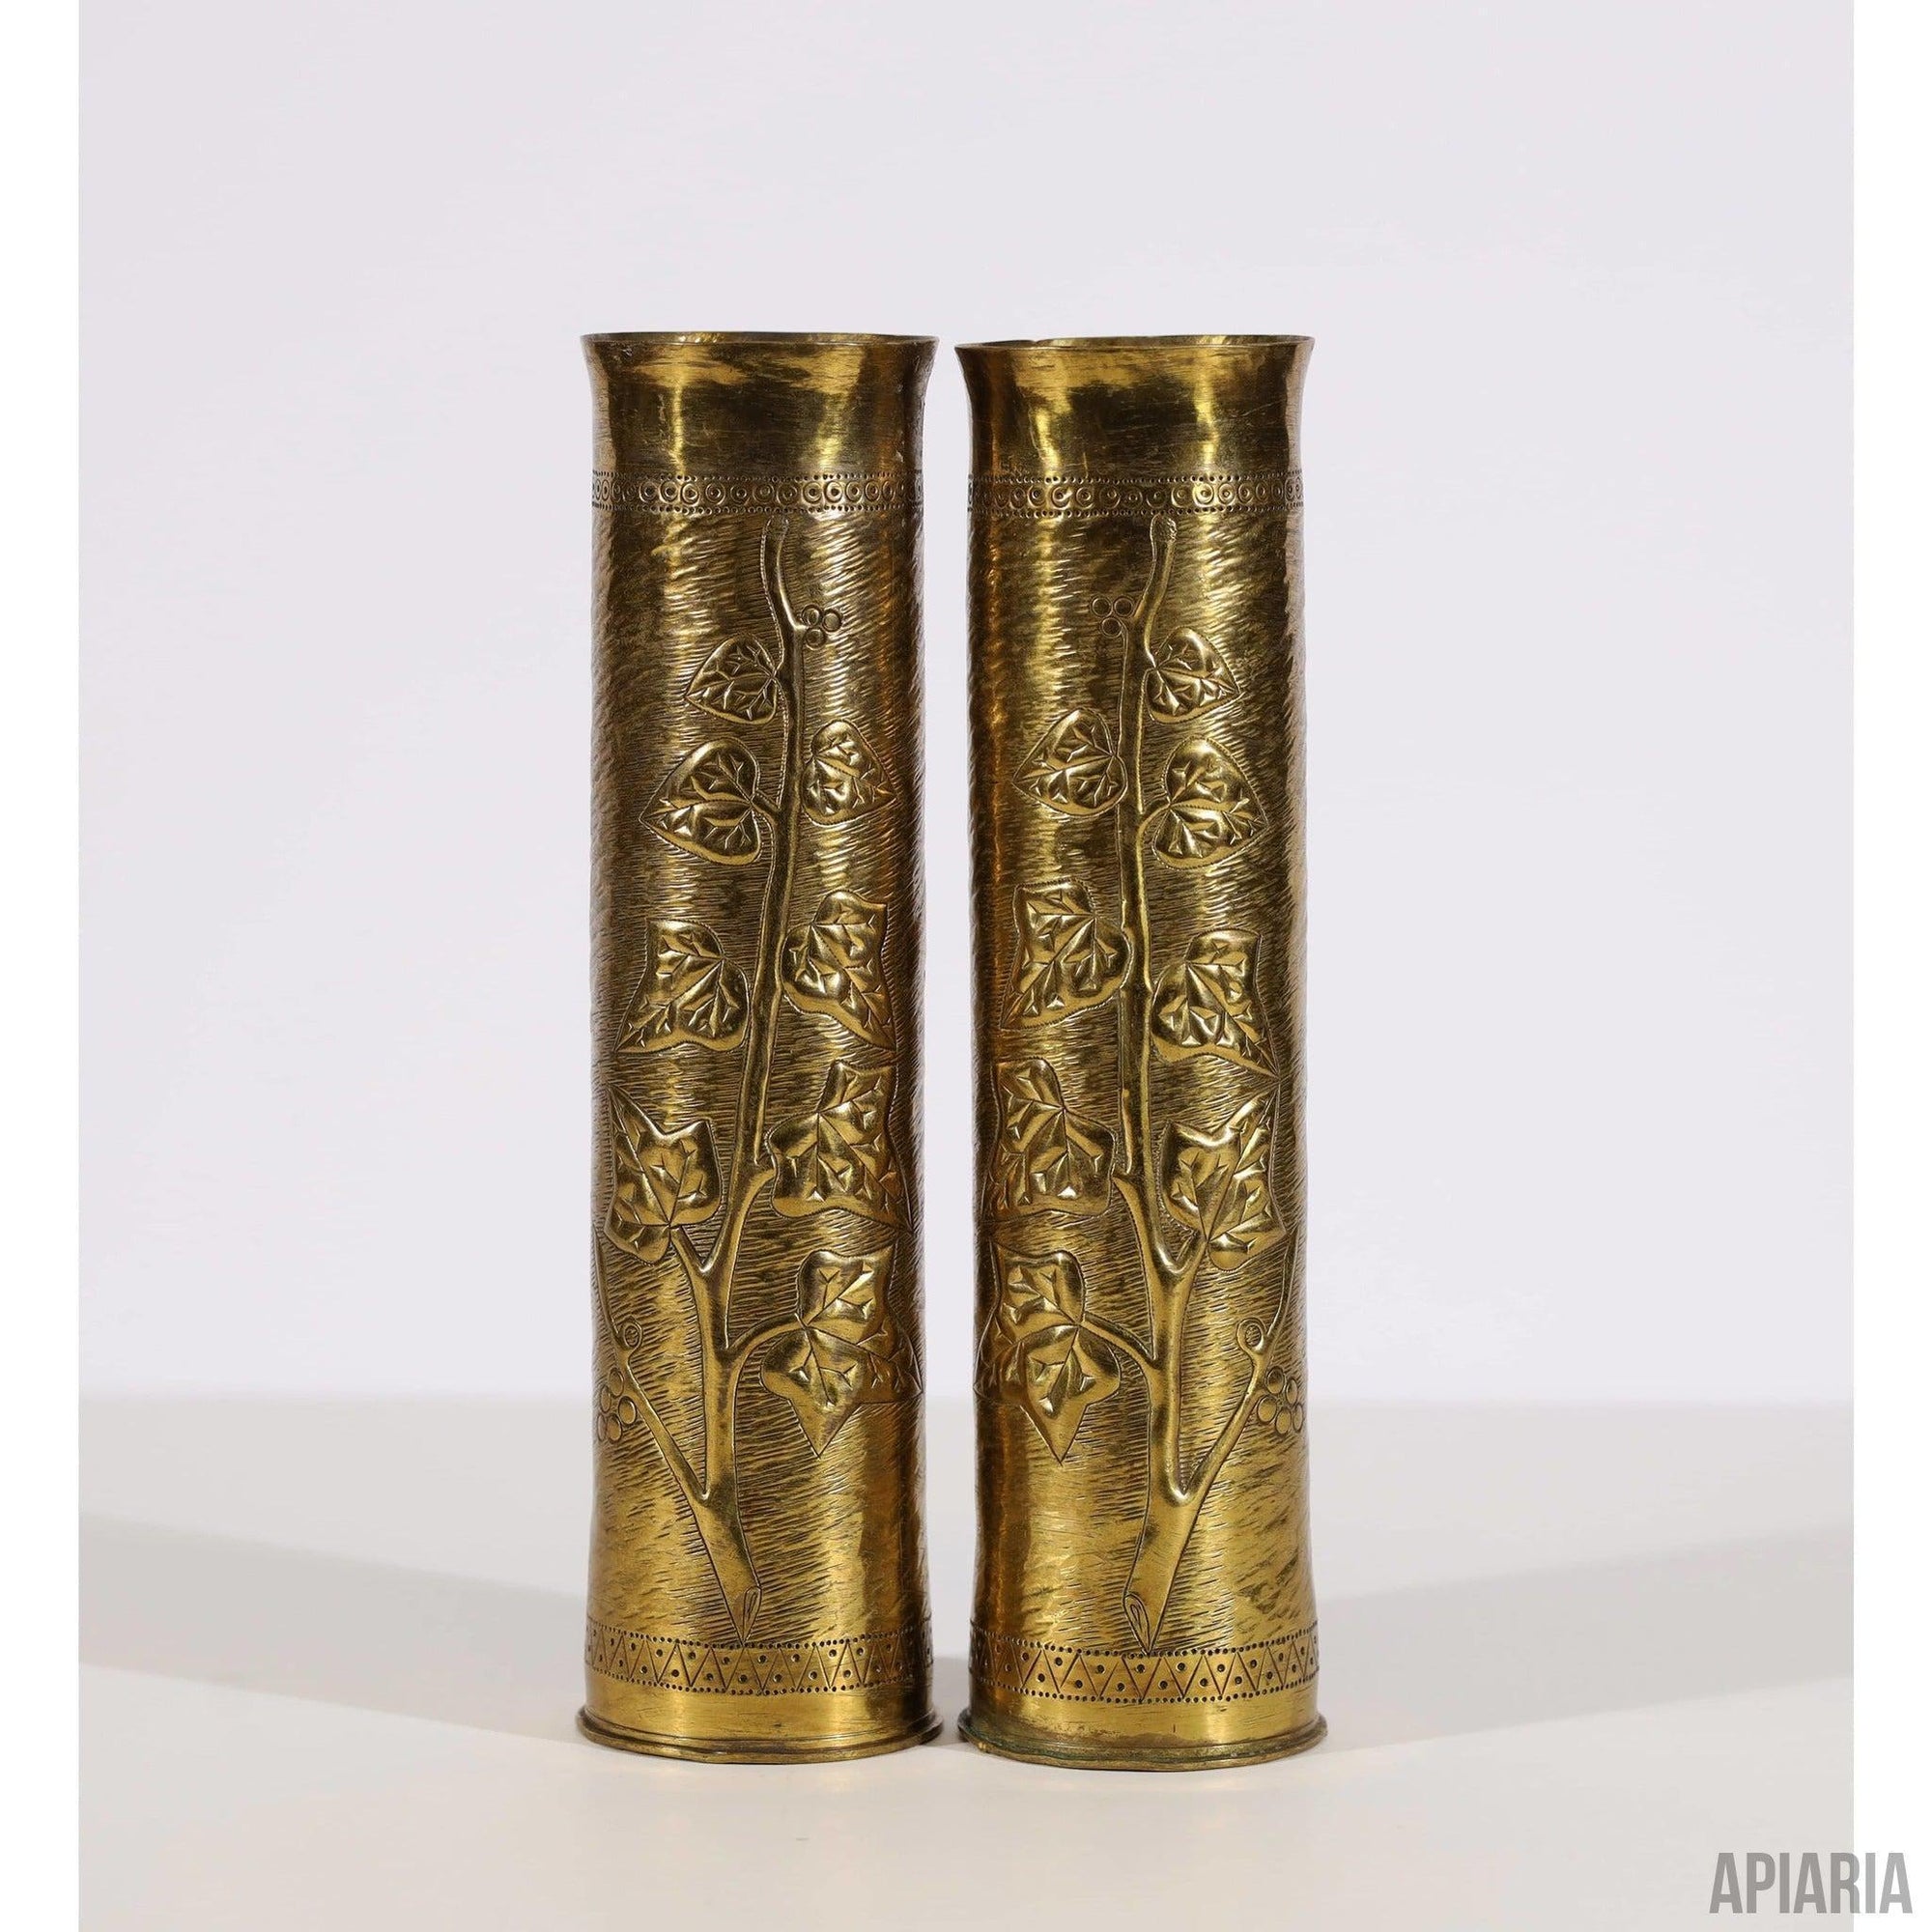 Original Engraved WWI Mortar Bullet Casing Set - Apiaria